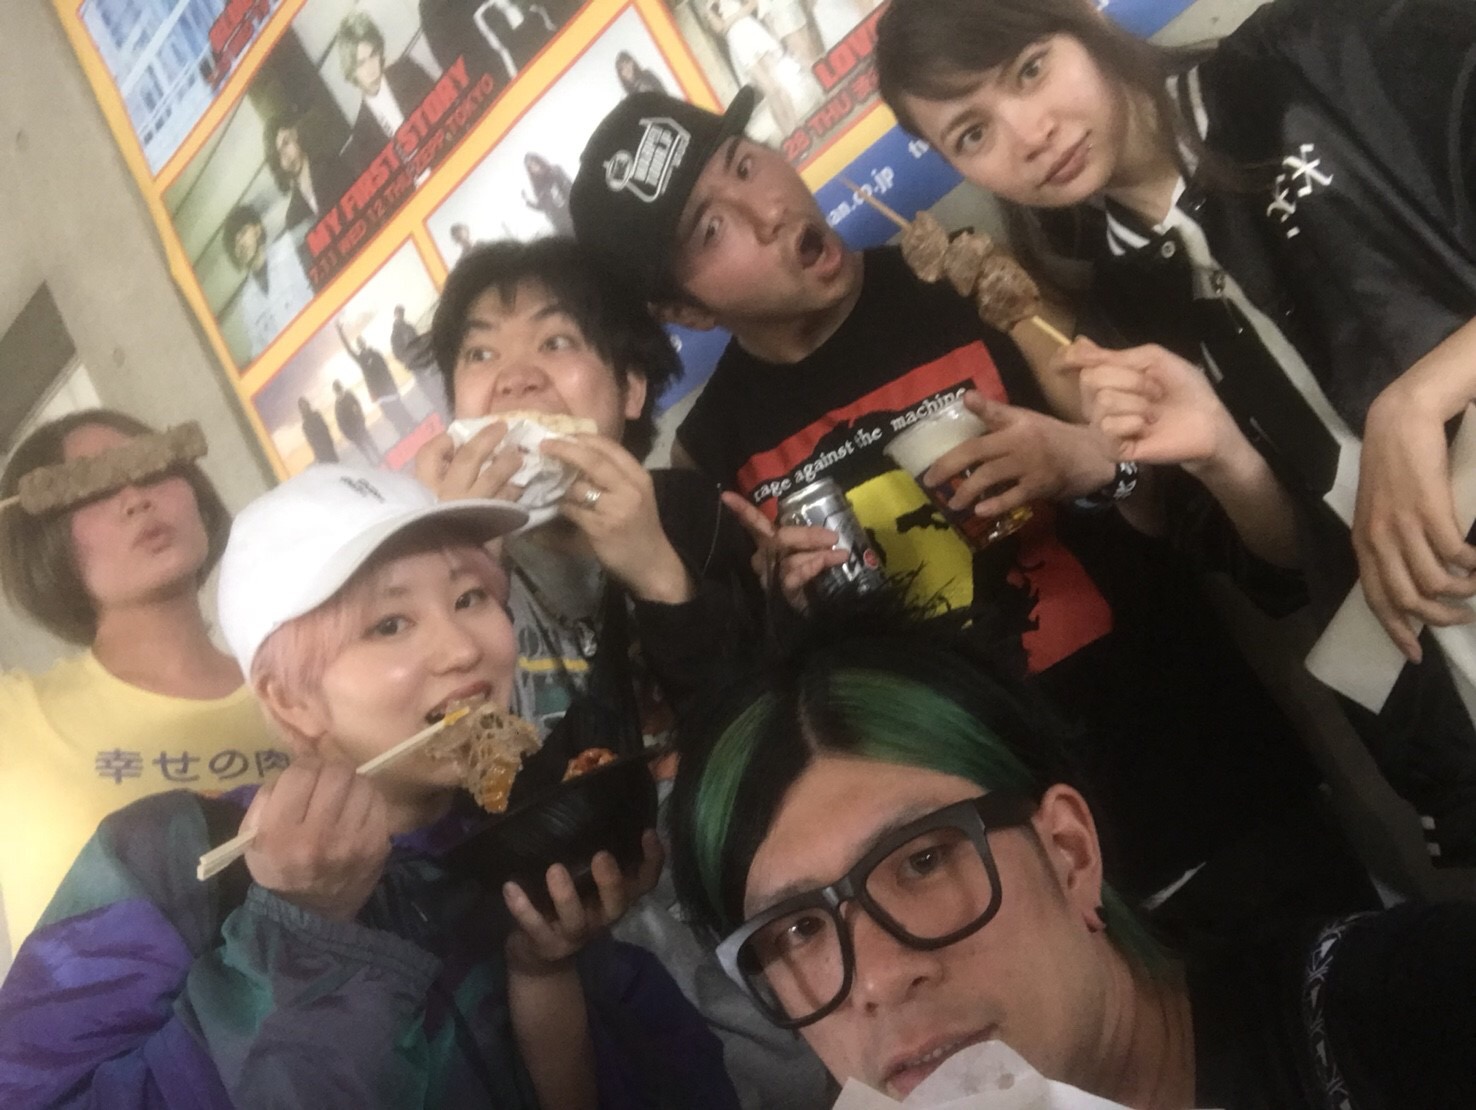 https://bar-rockaholic.jp/shibuya/blog/DAD47926-B28A-42DF-A831-BFCC71813CBD.jpeg